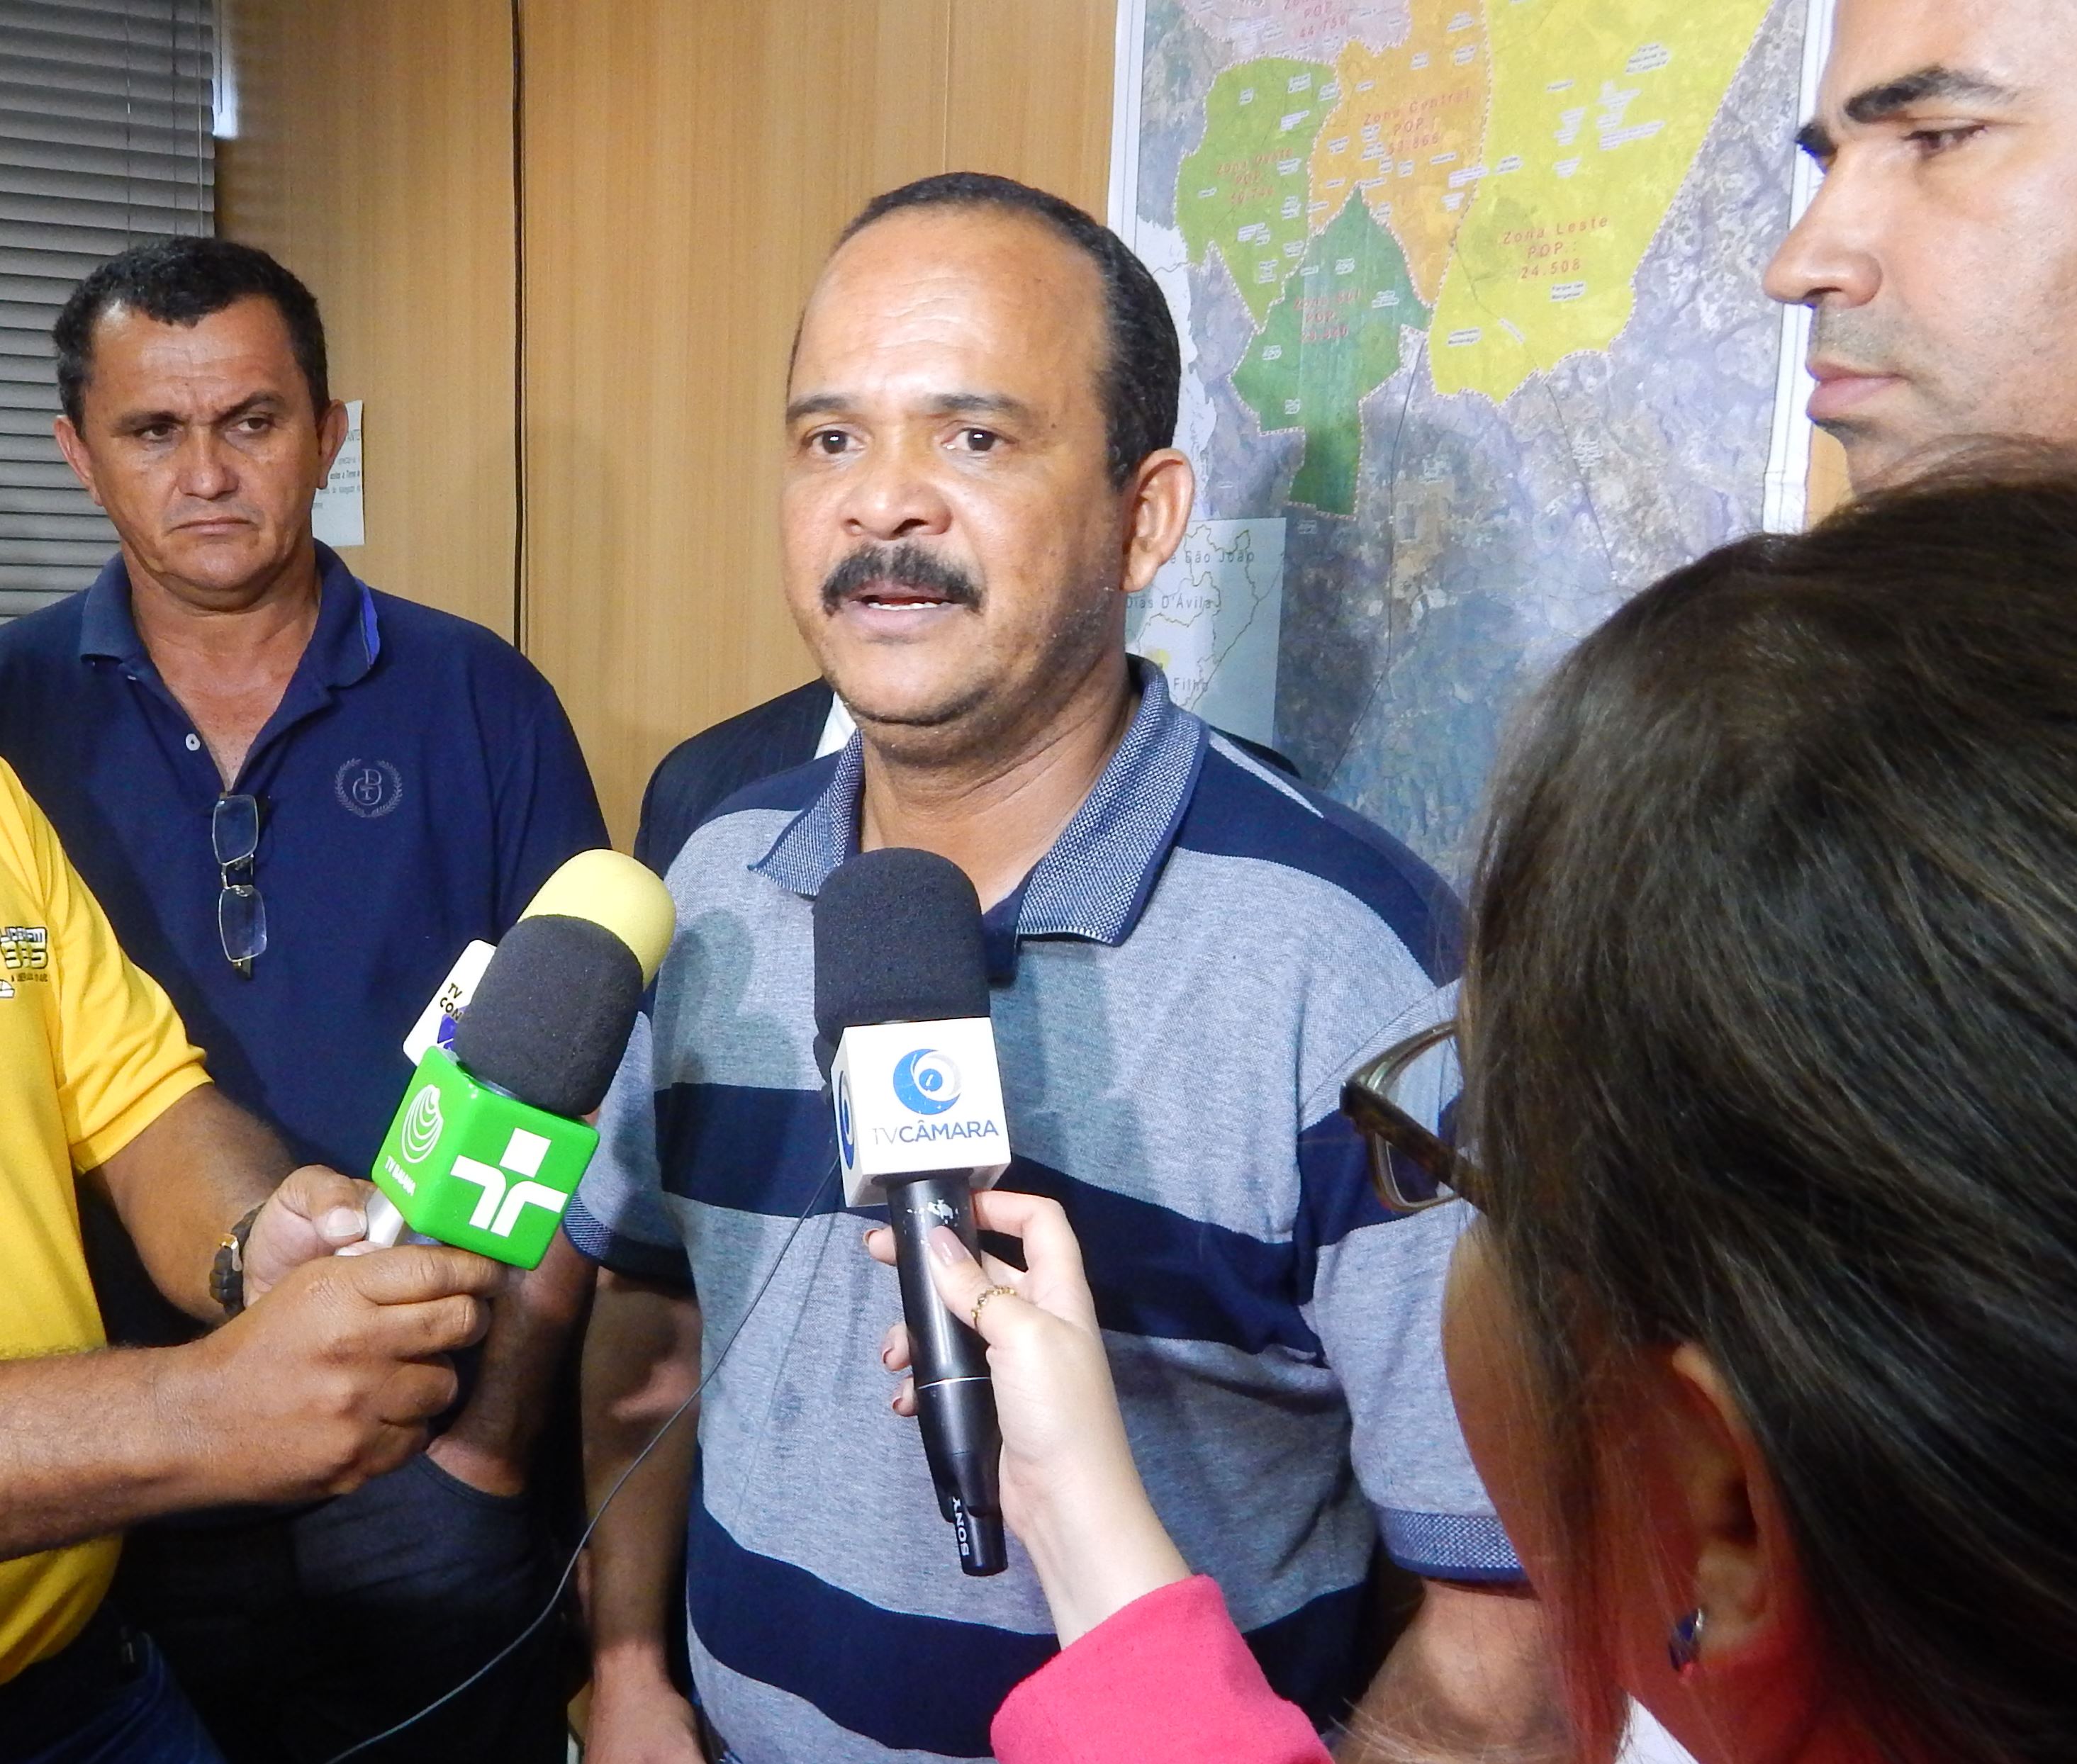 Prefeito de Camaçari justifica exoneração de servidores: “não querem trabalhar”